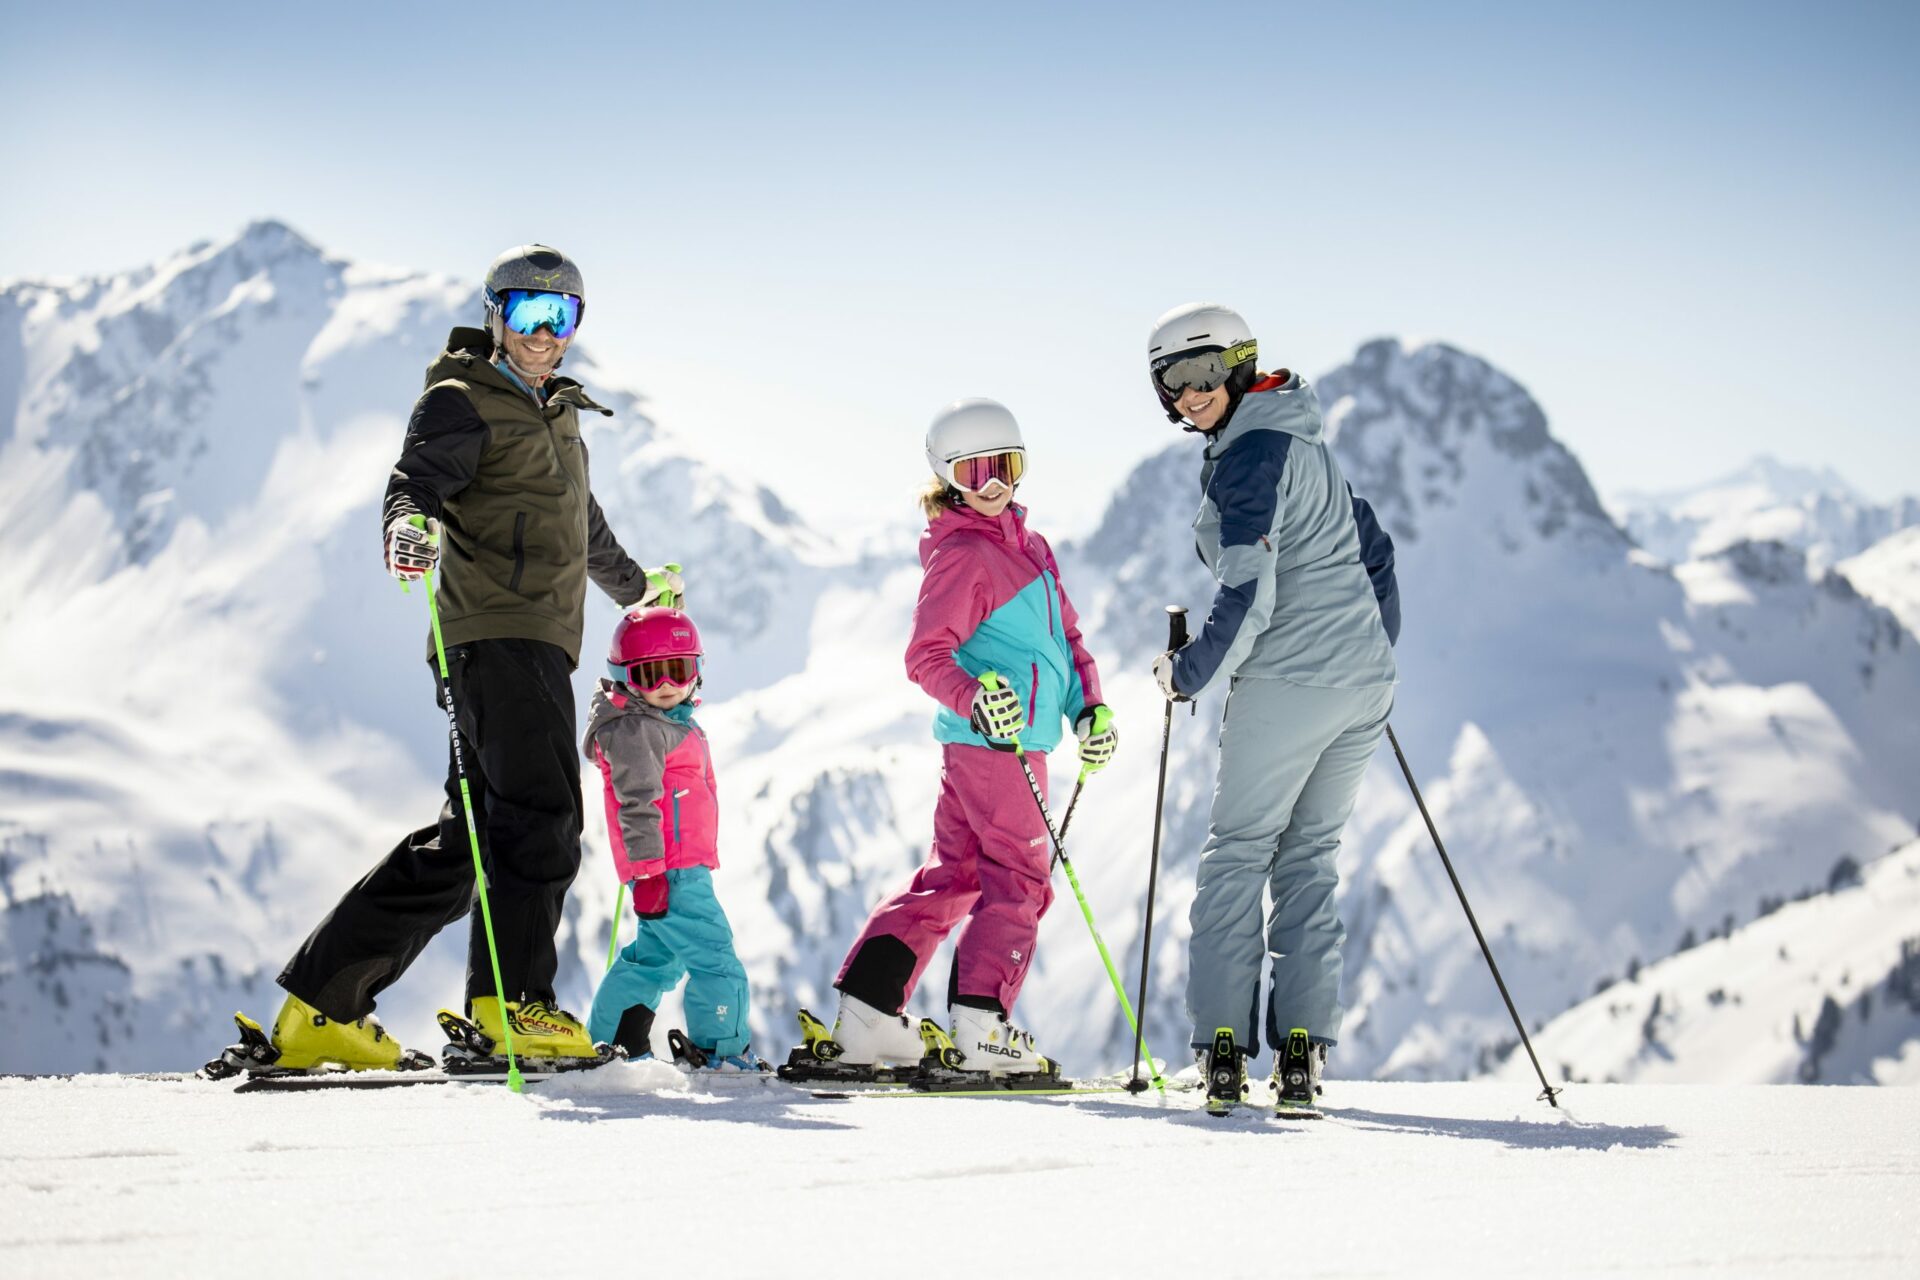 Eine Familie auf Skiern auf einem schneebedeckten Berg.